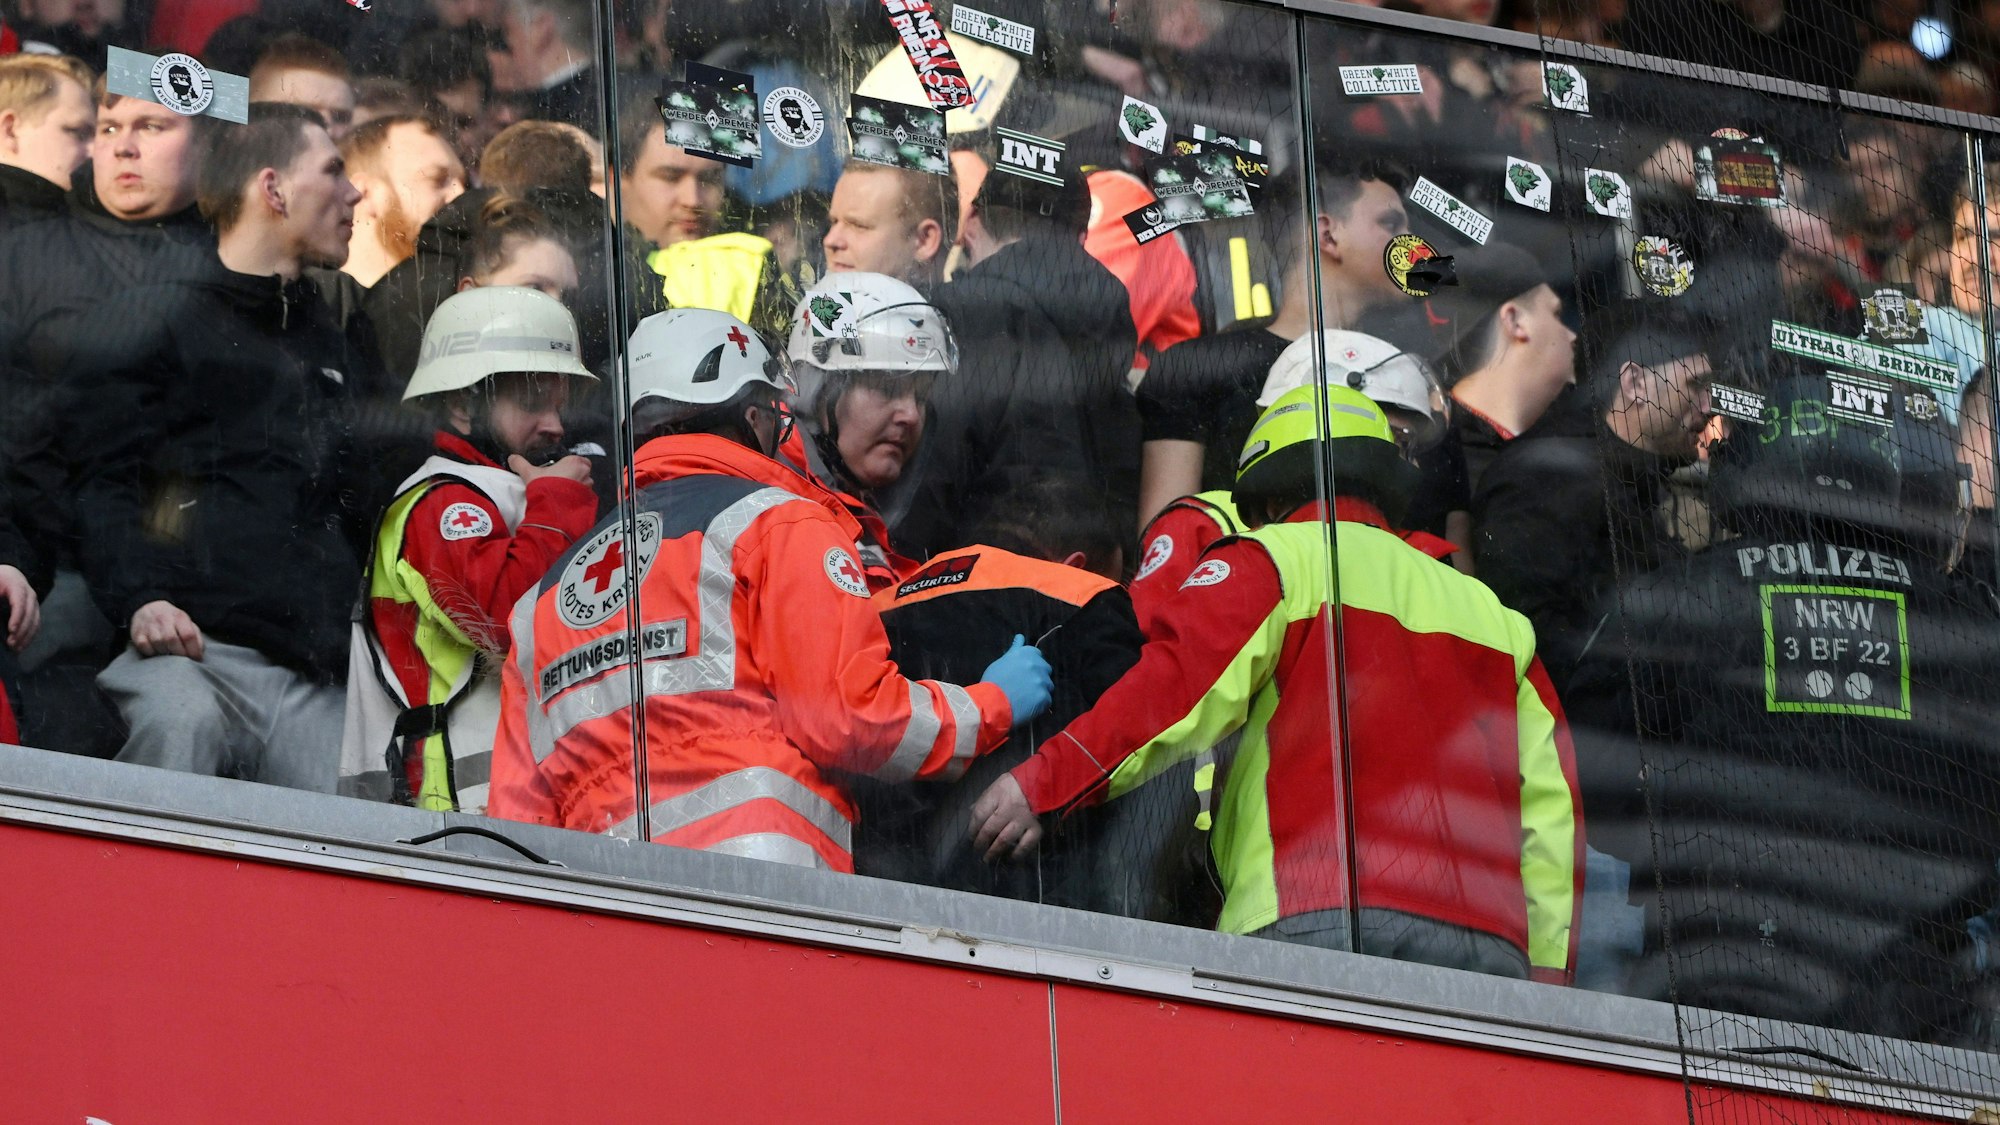 Auf den Zuschauerrängen in Köln kam es zu Rangeleien und Schlägereien zwischen den Fans, ein Ordner wurde verletzt und musste behandelt werden.